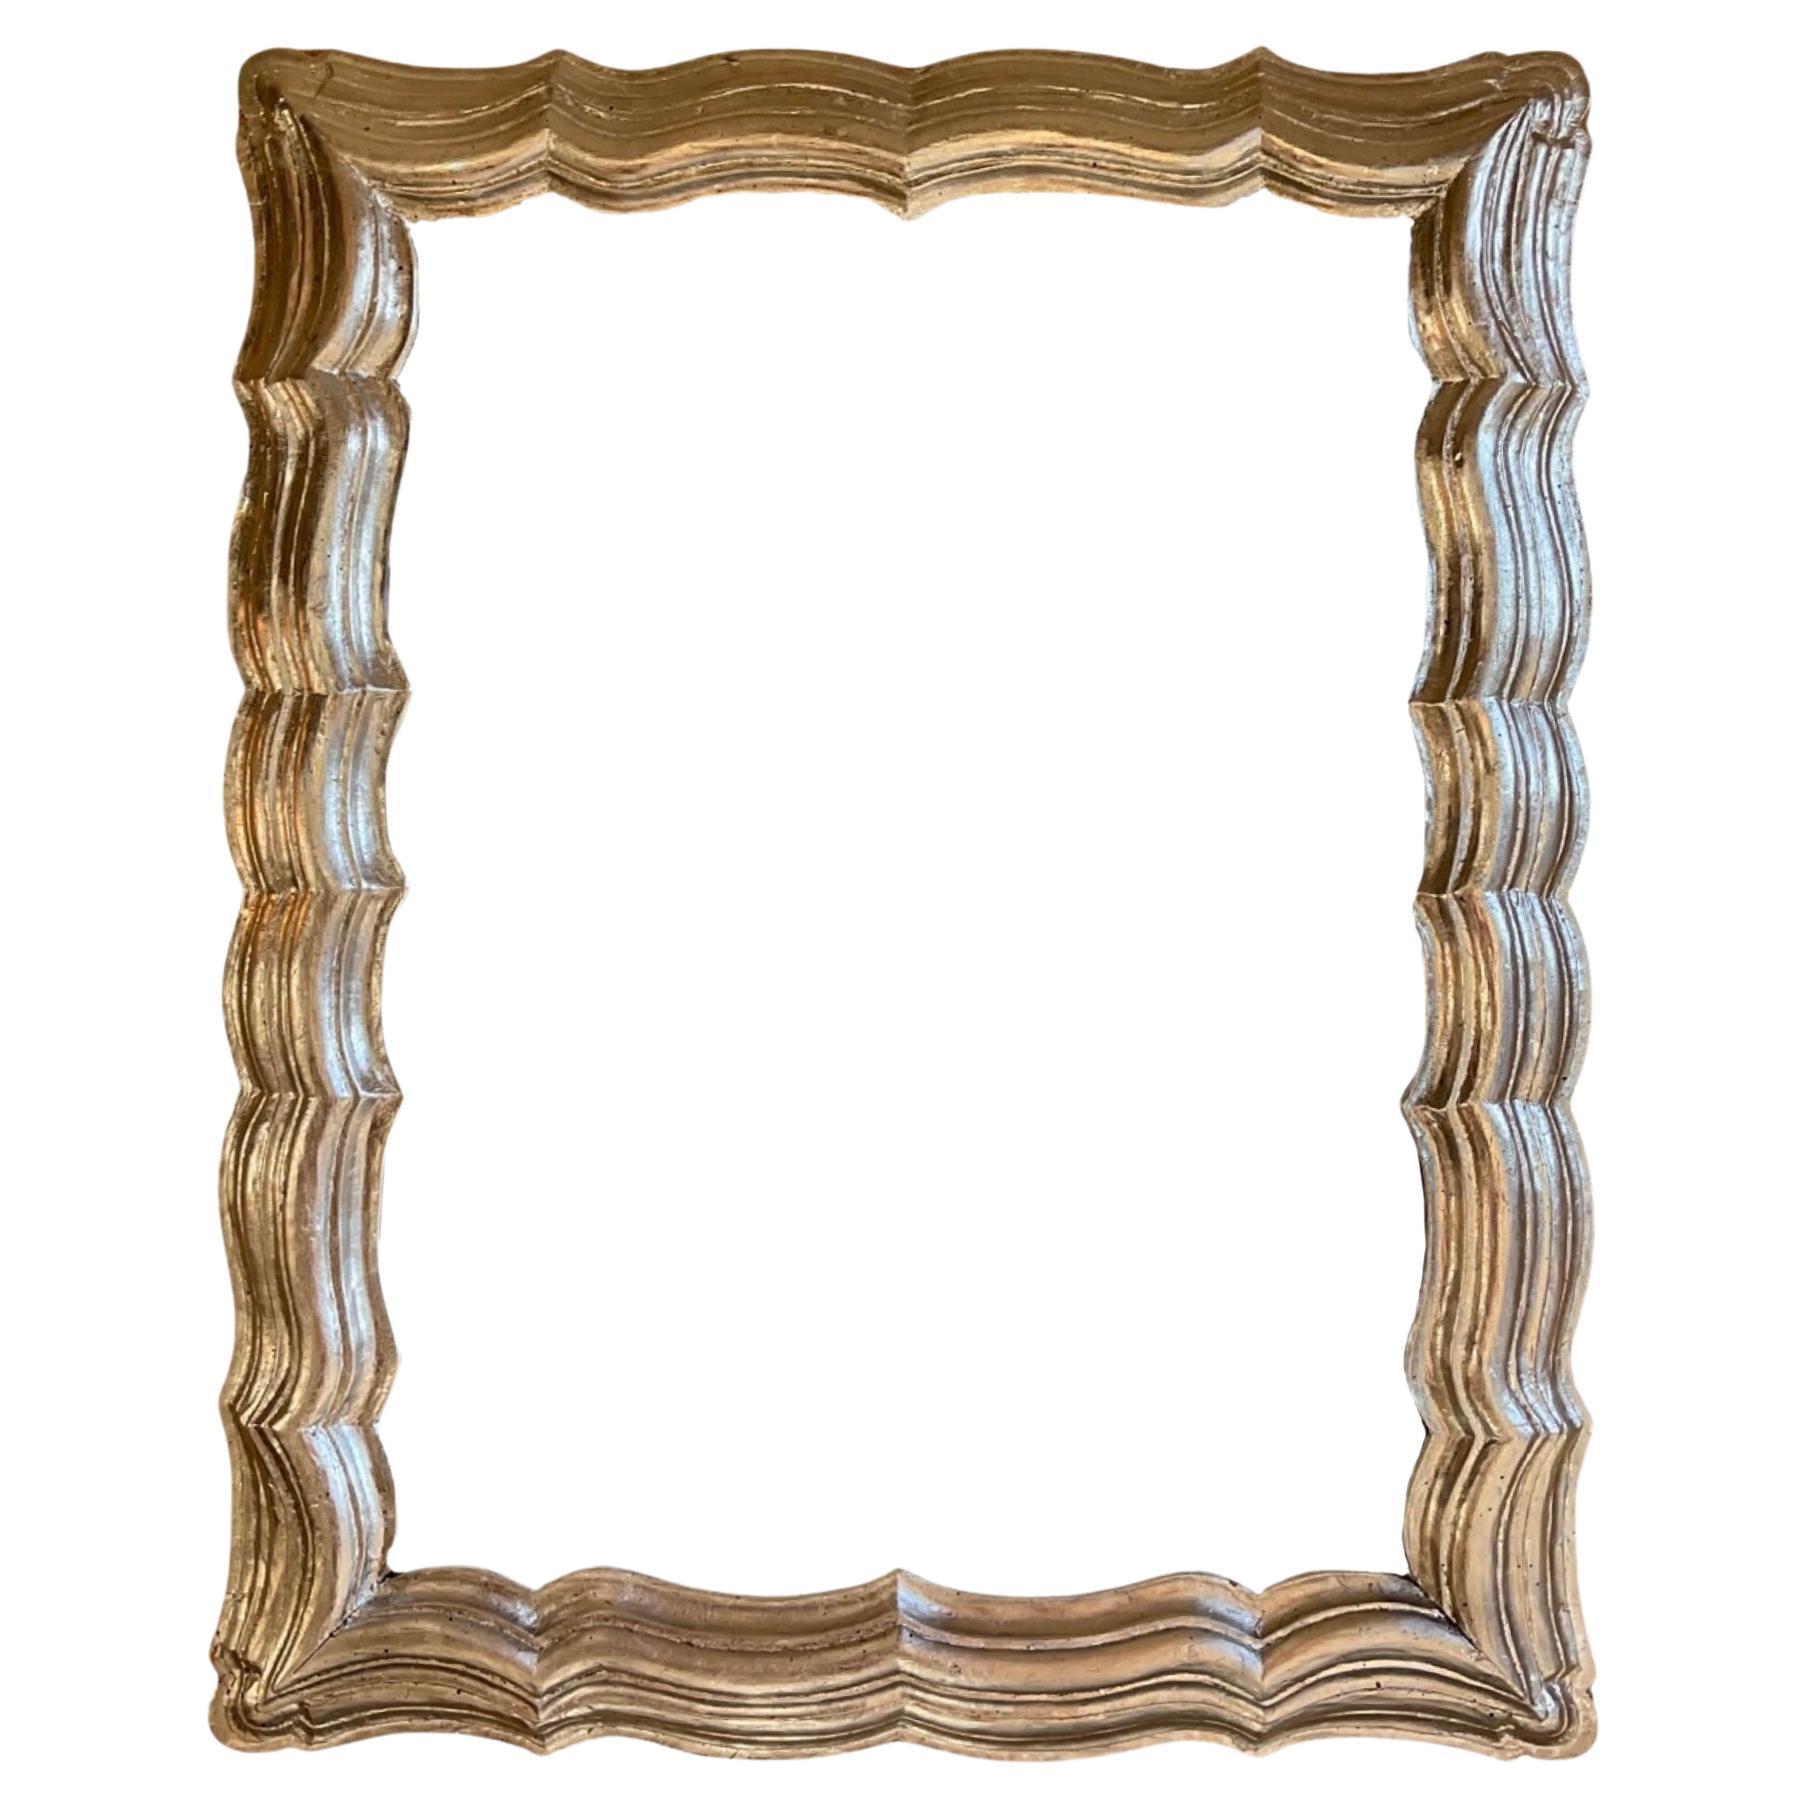 Ce miroir en bois de chêne français du XIXe siècle à feuilles d'argent rayonne d'élégance avec sa finition à feuilles d'argent et sa construction robuste en bois de chêne. Cette pièce authentique ajoute une touche de sophistication à tout espace, ce